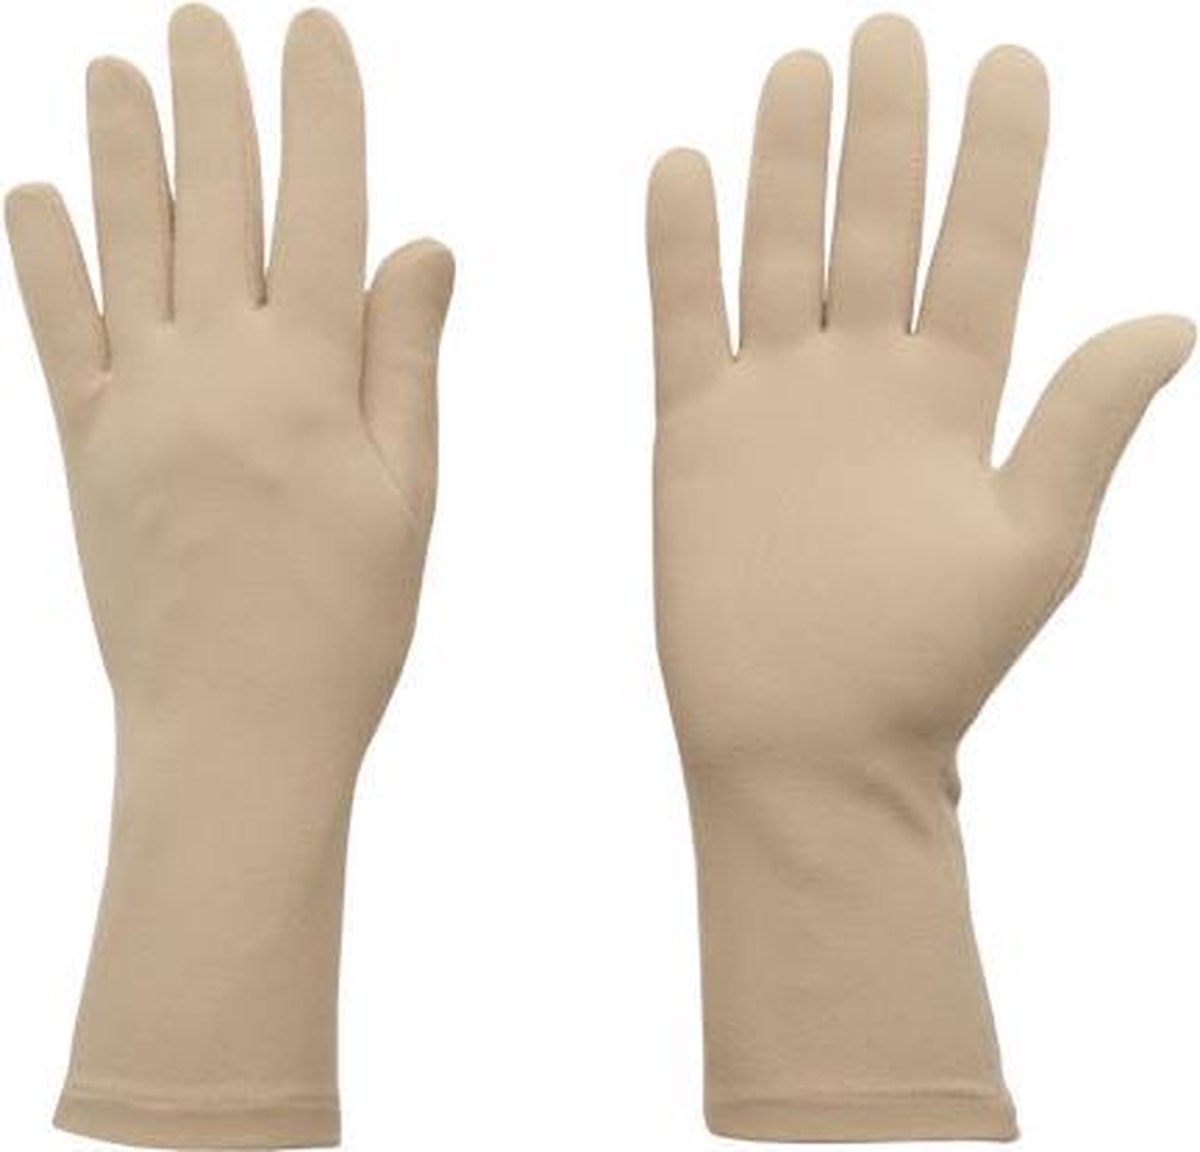 Protexgloves Original handschoenen beige small - Tegen eczeem, zon gevoeligheid en andere chronische huid- en handaandoeningen